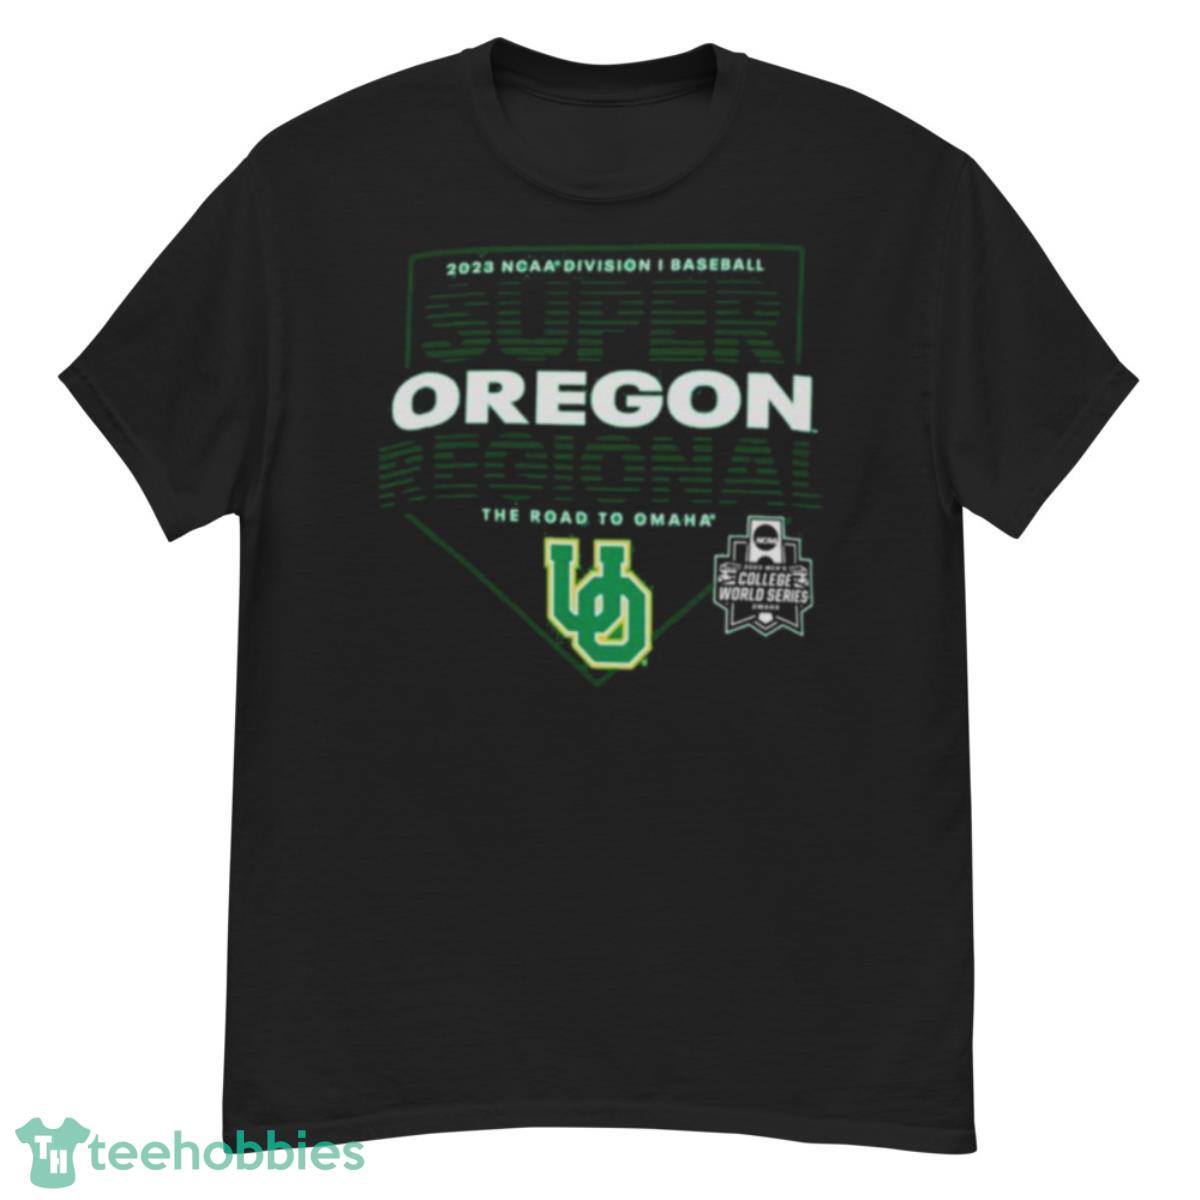 Oregon Ducks 2023 NCAA Division I Baseball Super Regional Eugene OR Shirt - G500 Men’s Classic T-Shirt